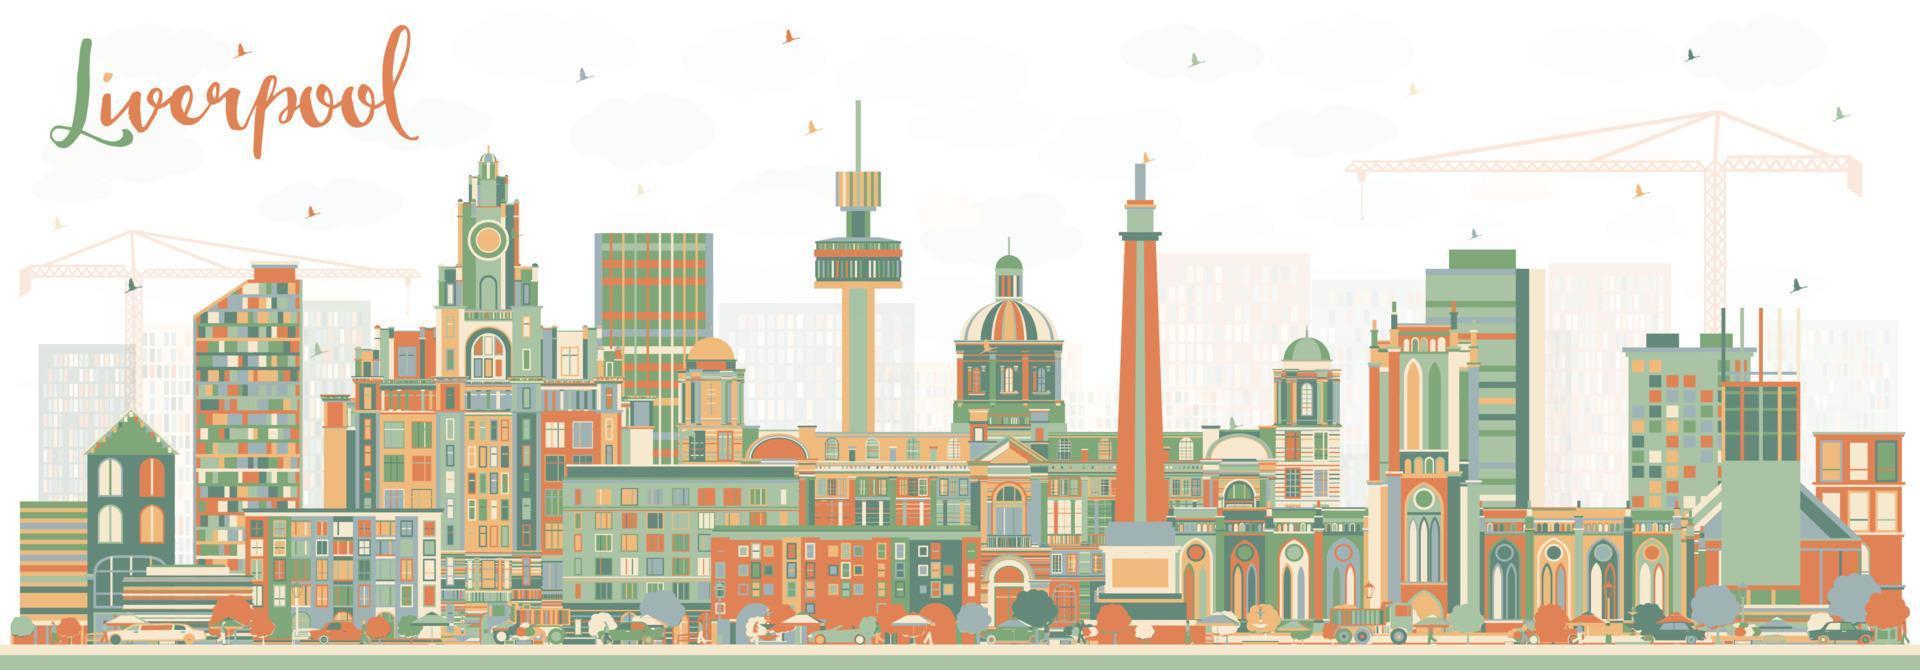 skyline de liverpool avec des bâtiments de couleur. vecteur